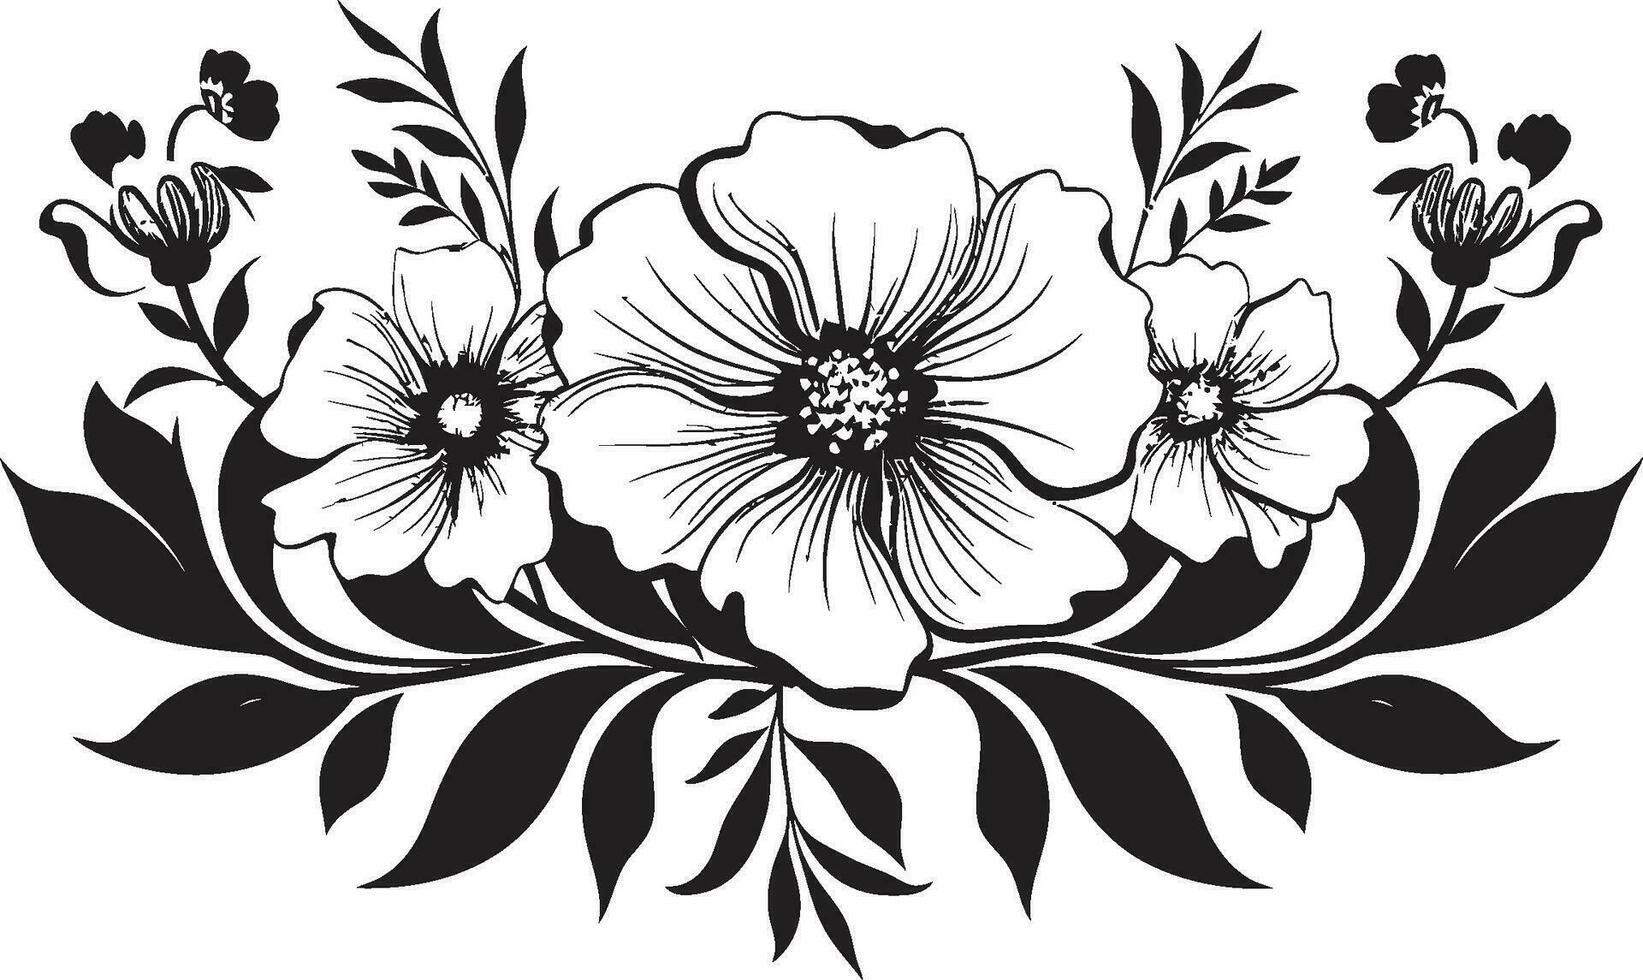 noir florecer popurrí negro floral logo elementos elegante entintado jardín capricho mano dibujado florales vector